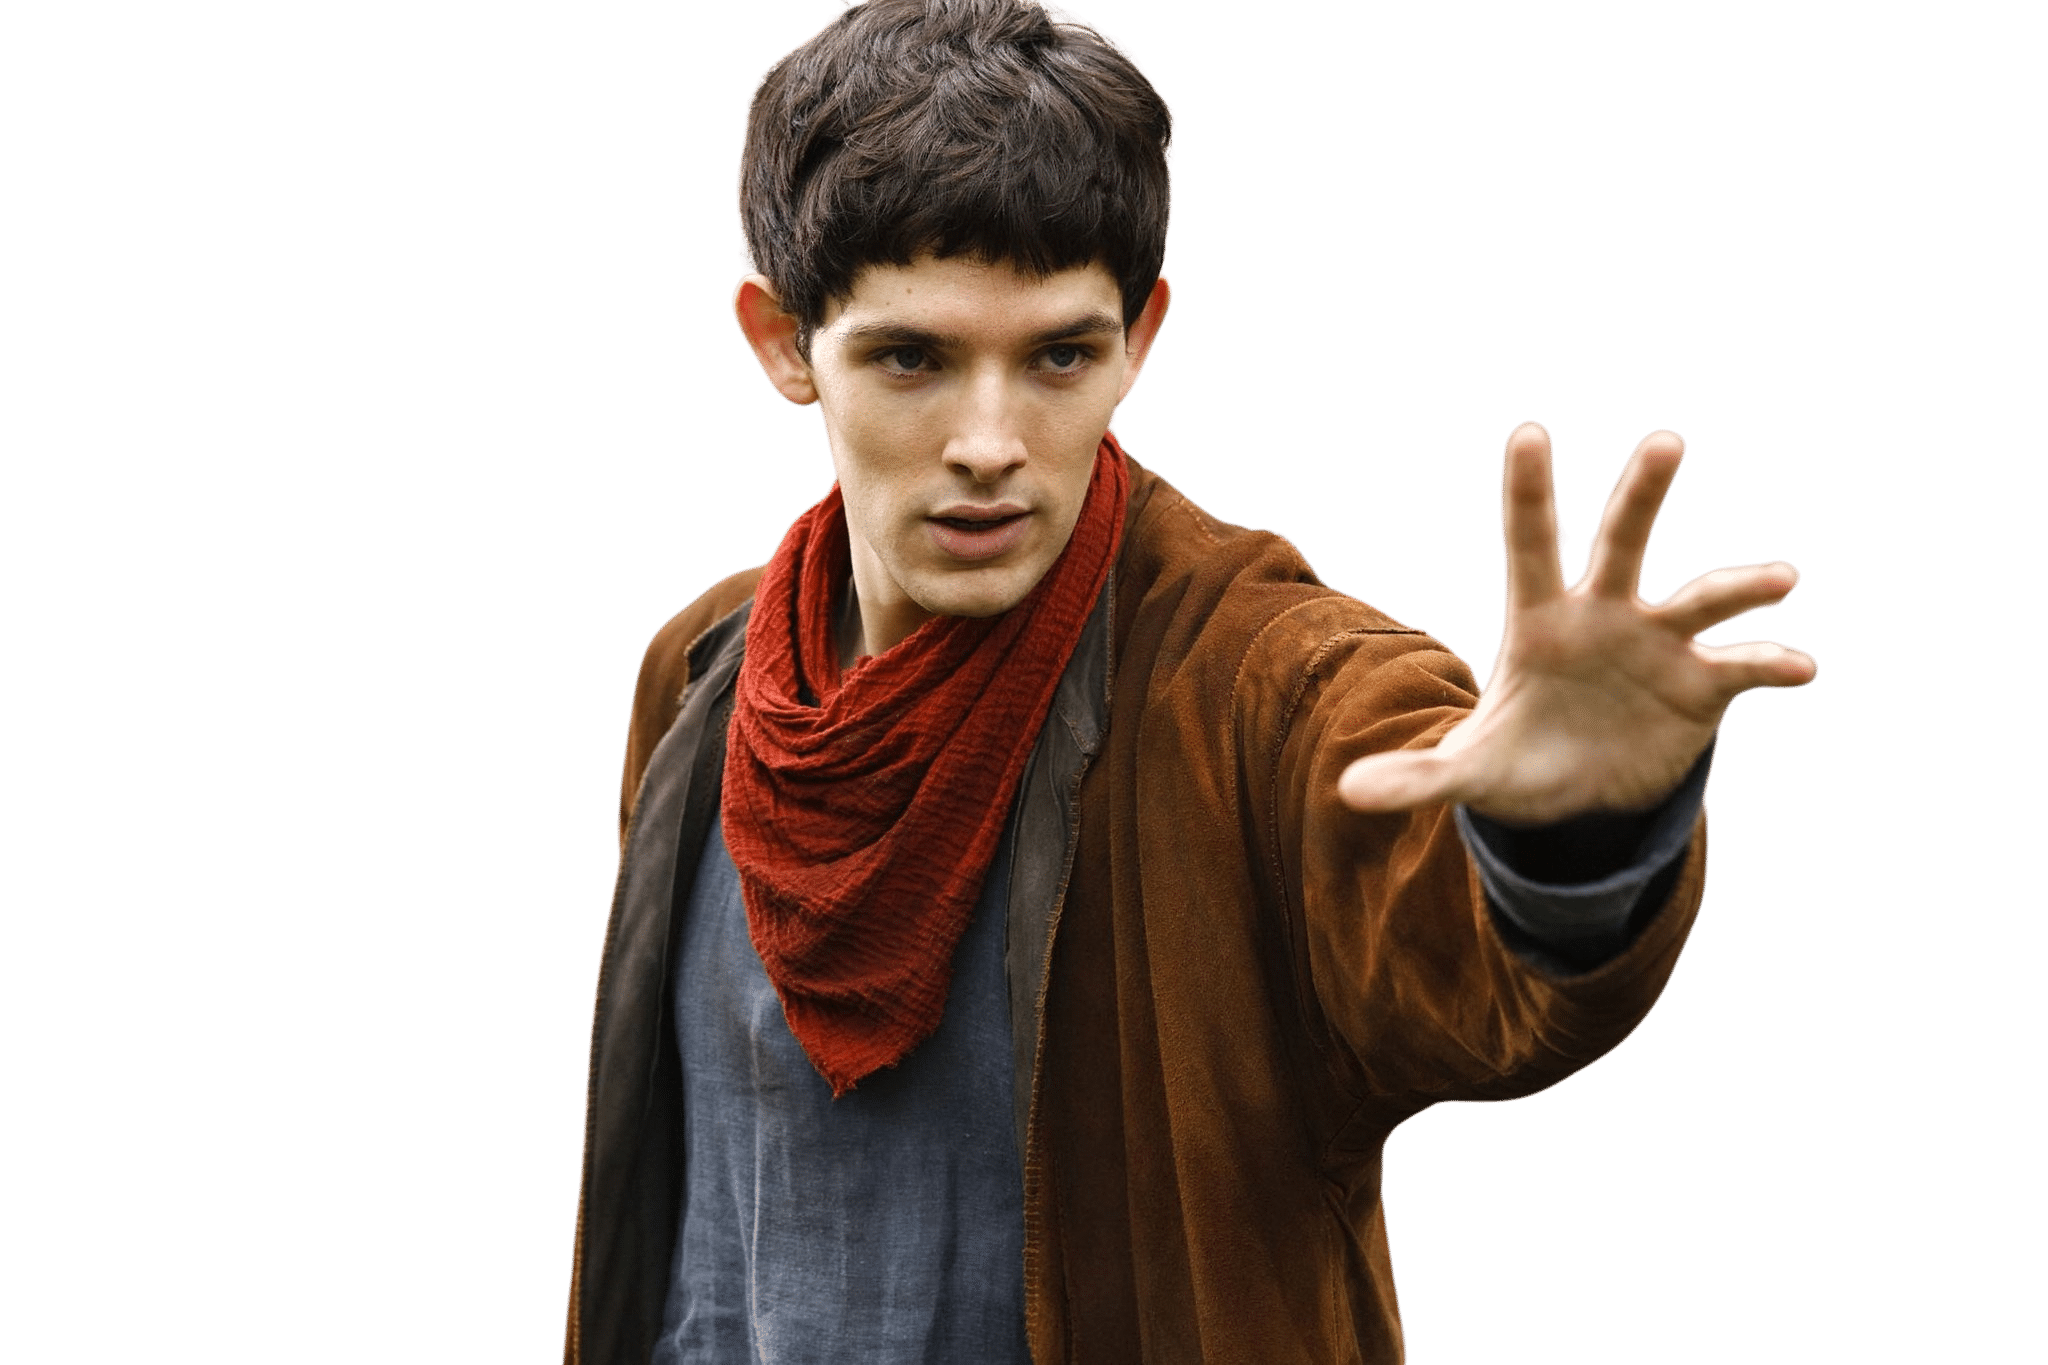 Comment l'humour est-il intégré au drame fantastique dans "Merlin" ?